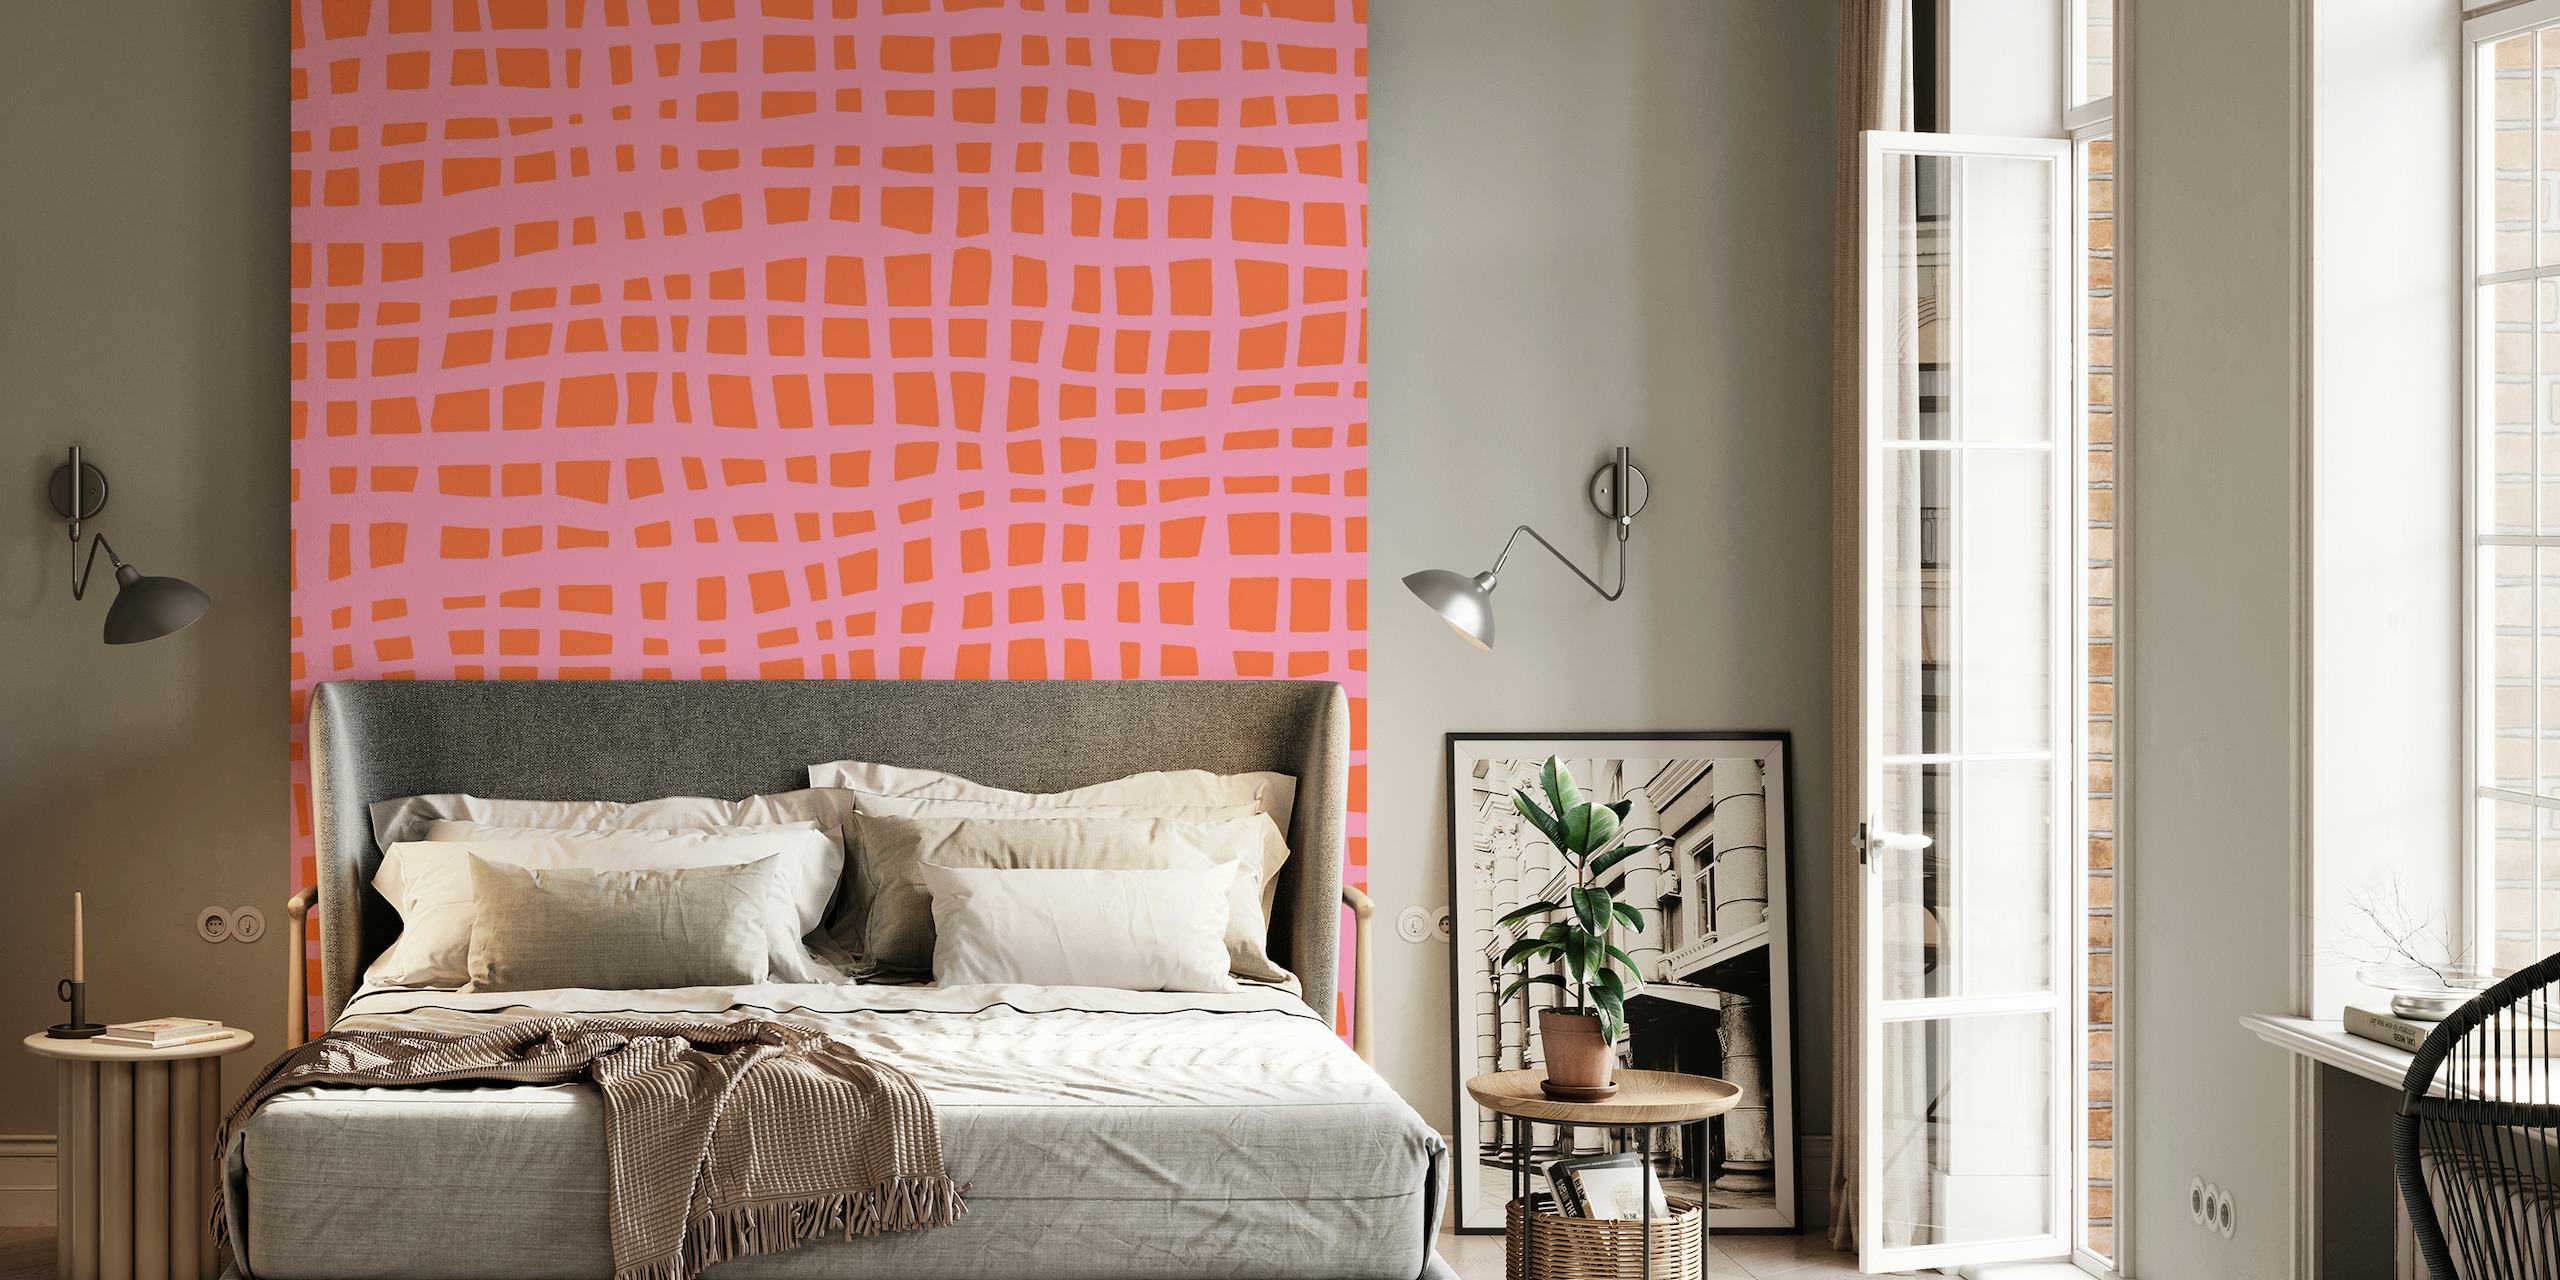 Retro grid pattern orange pink behang